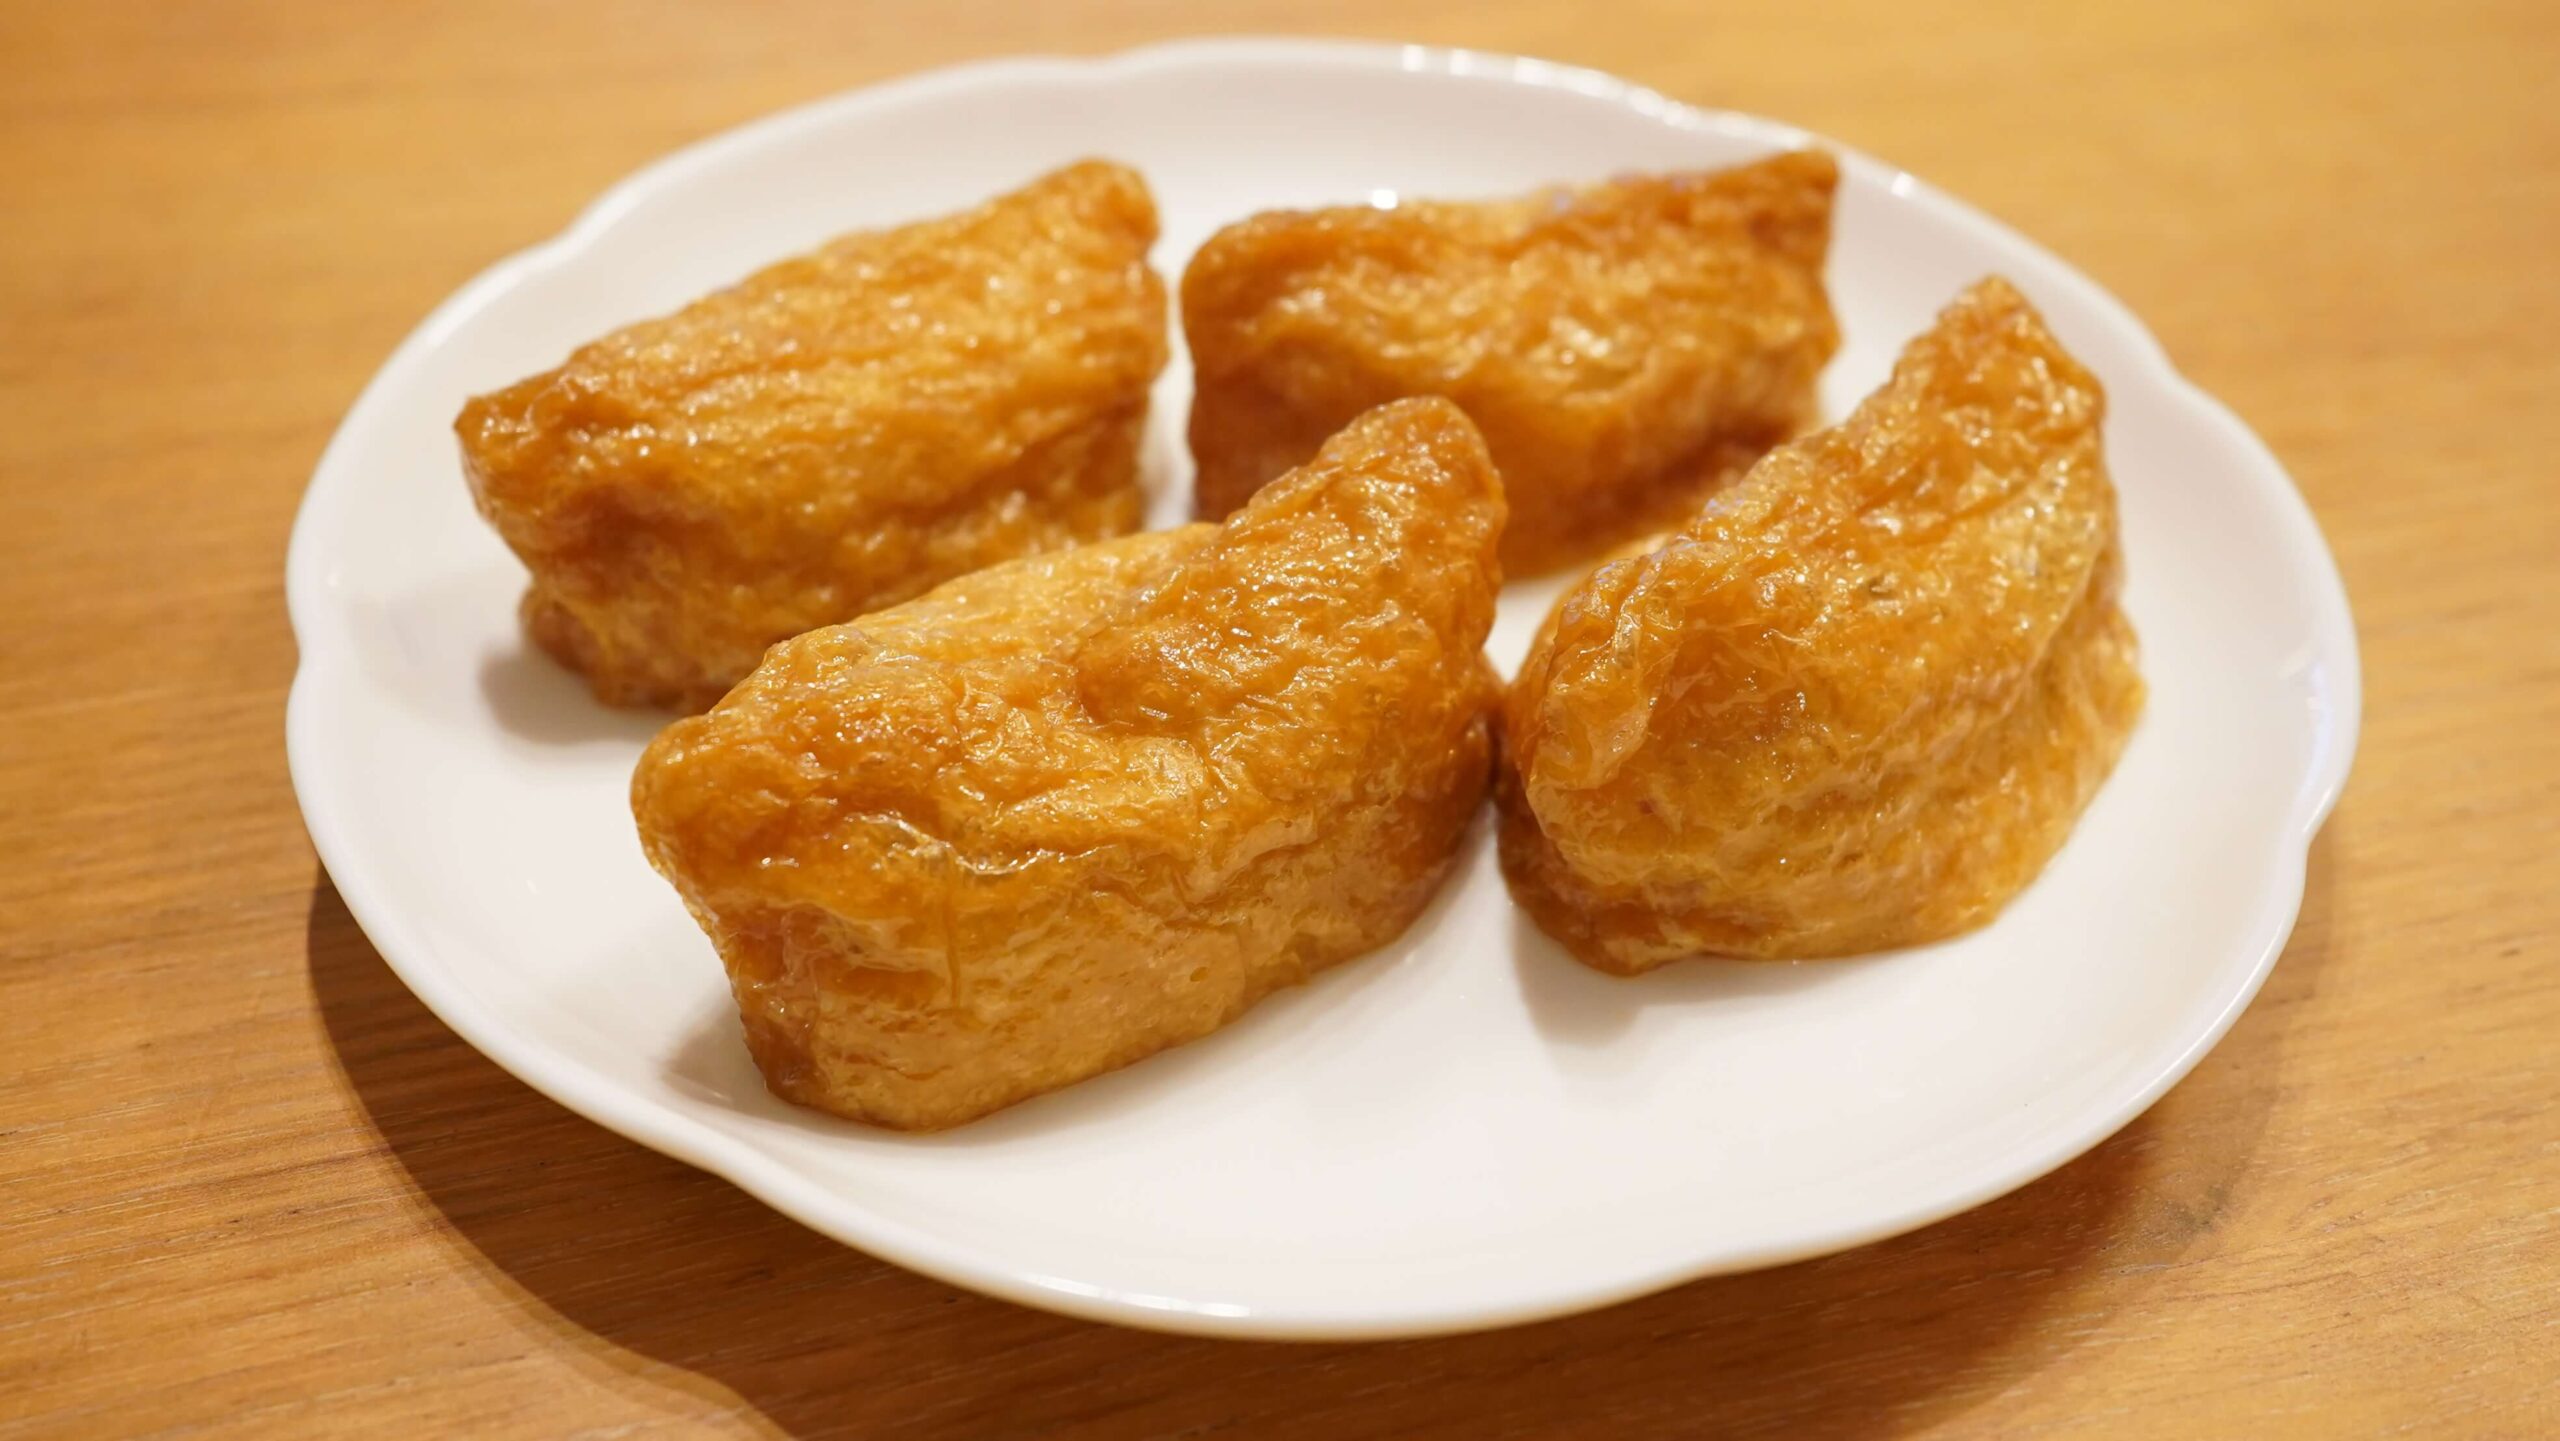 「ごはんの里」の冷凍食品「五目いなり寿司」を皿に盛りつけた写真